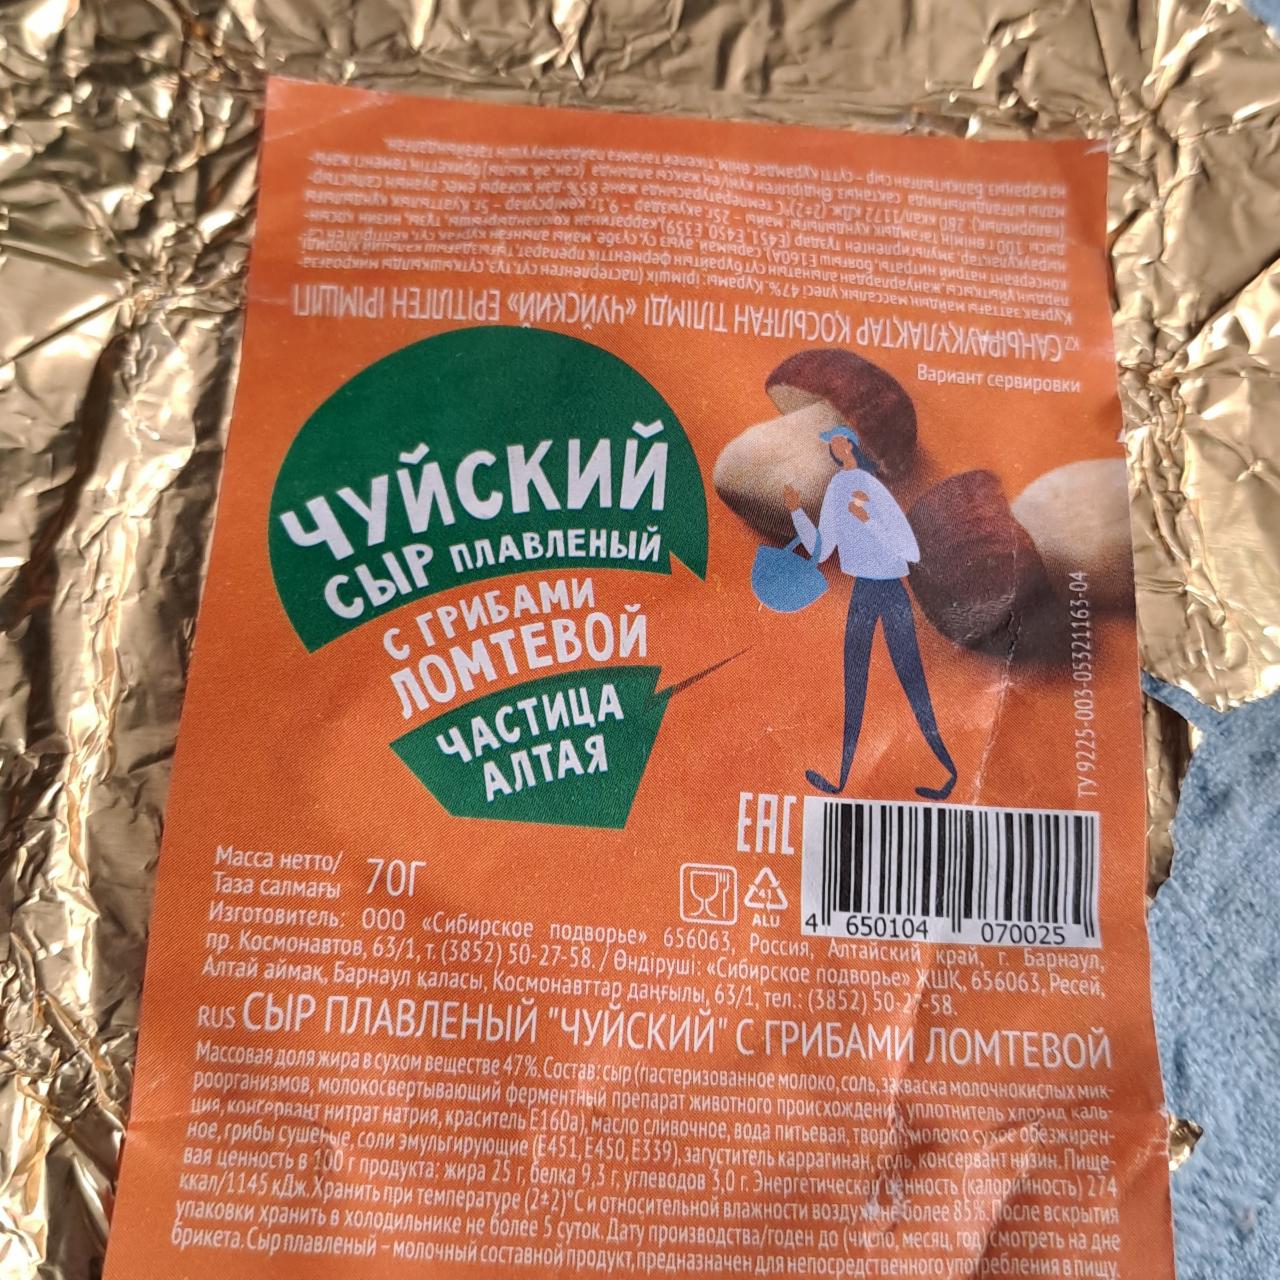 Фото - чуйский сыр плавленый с грибами ломтевой частица атая Сибирское подворье